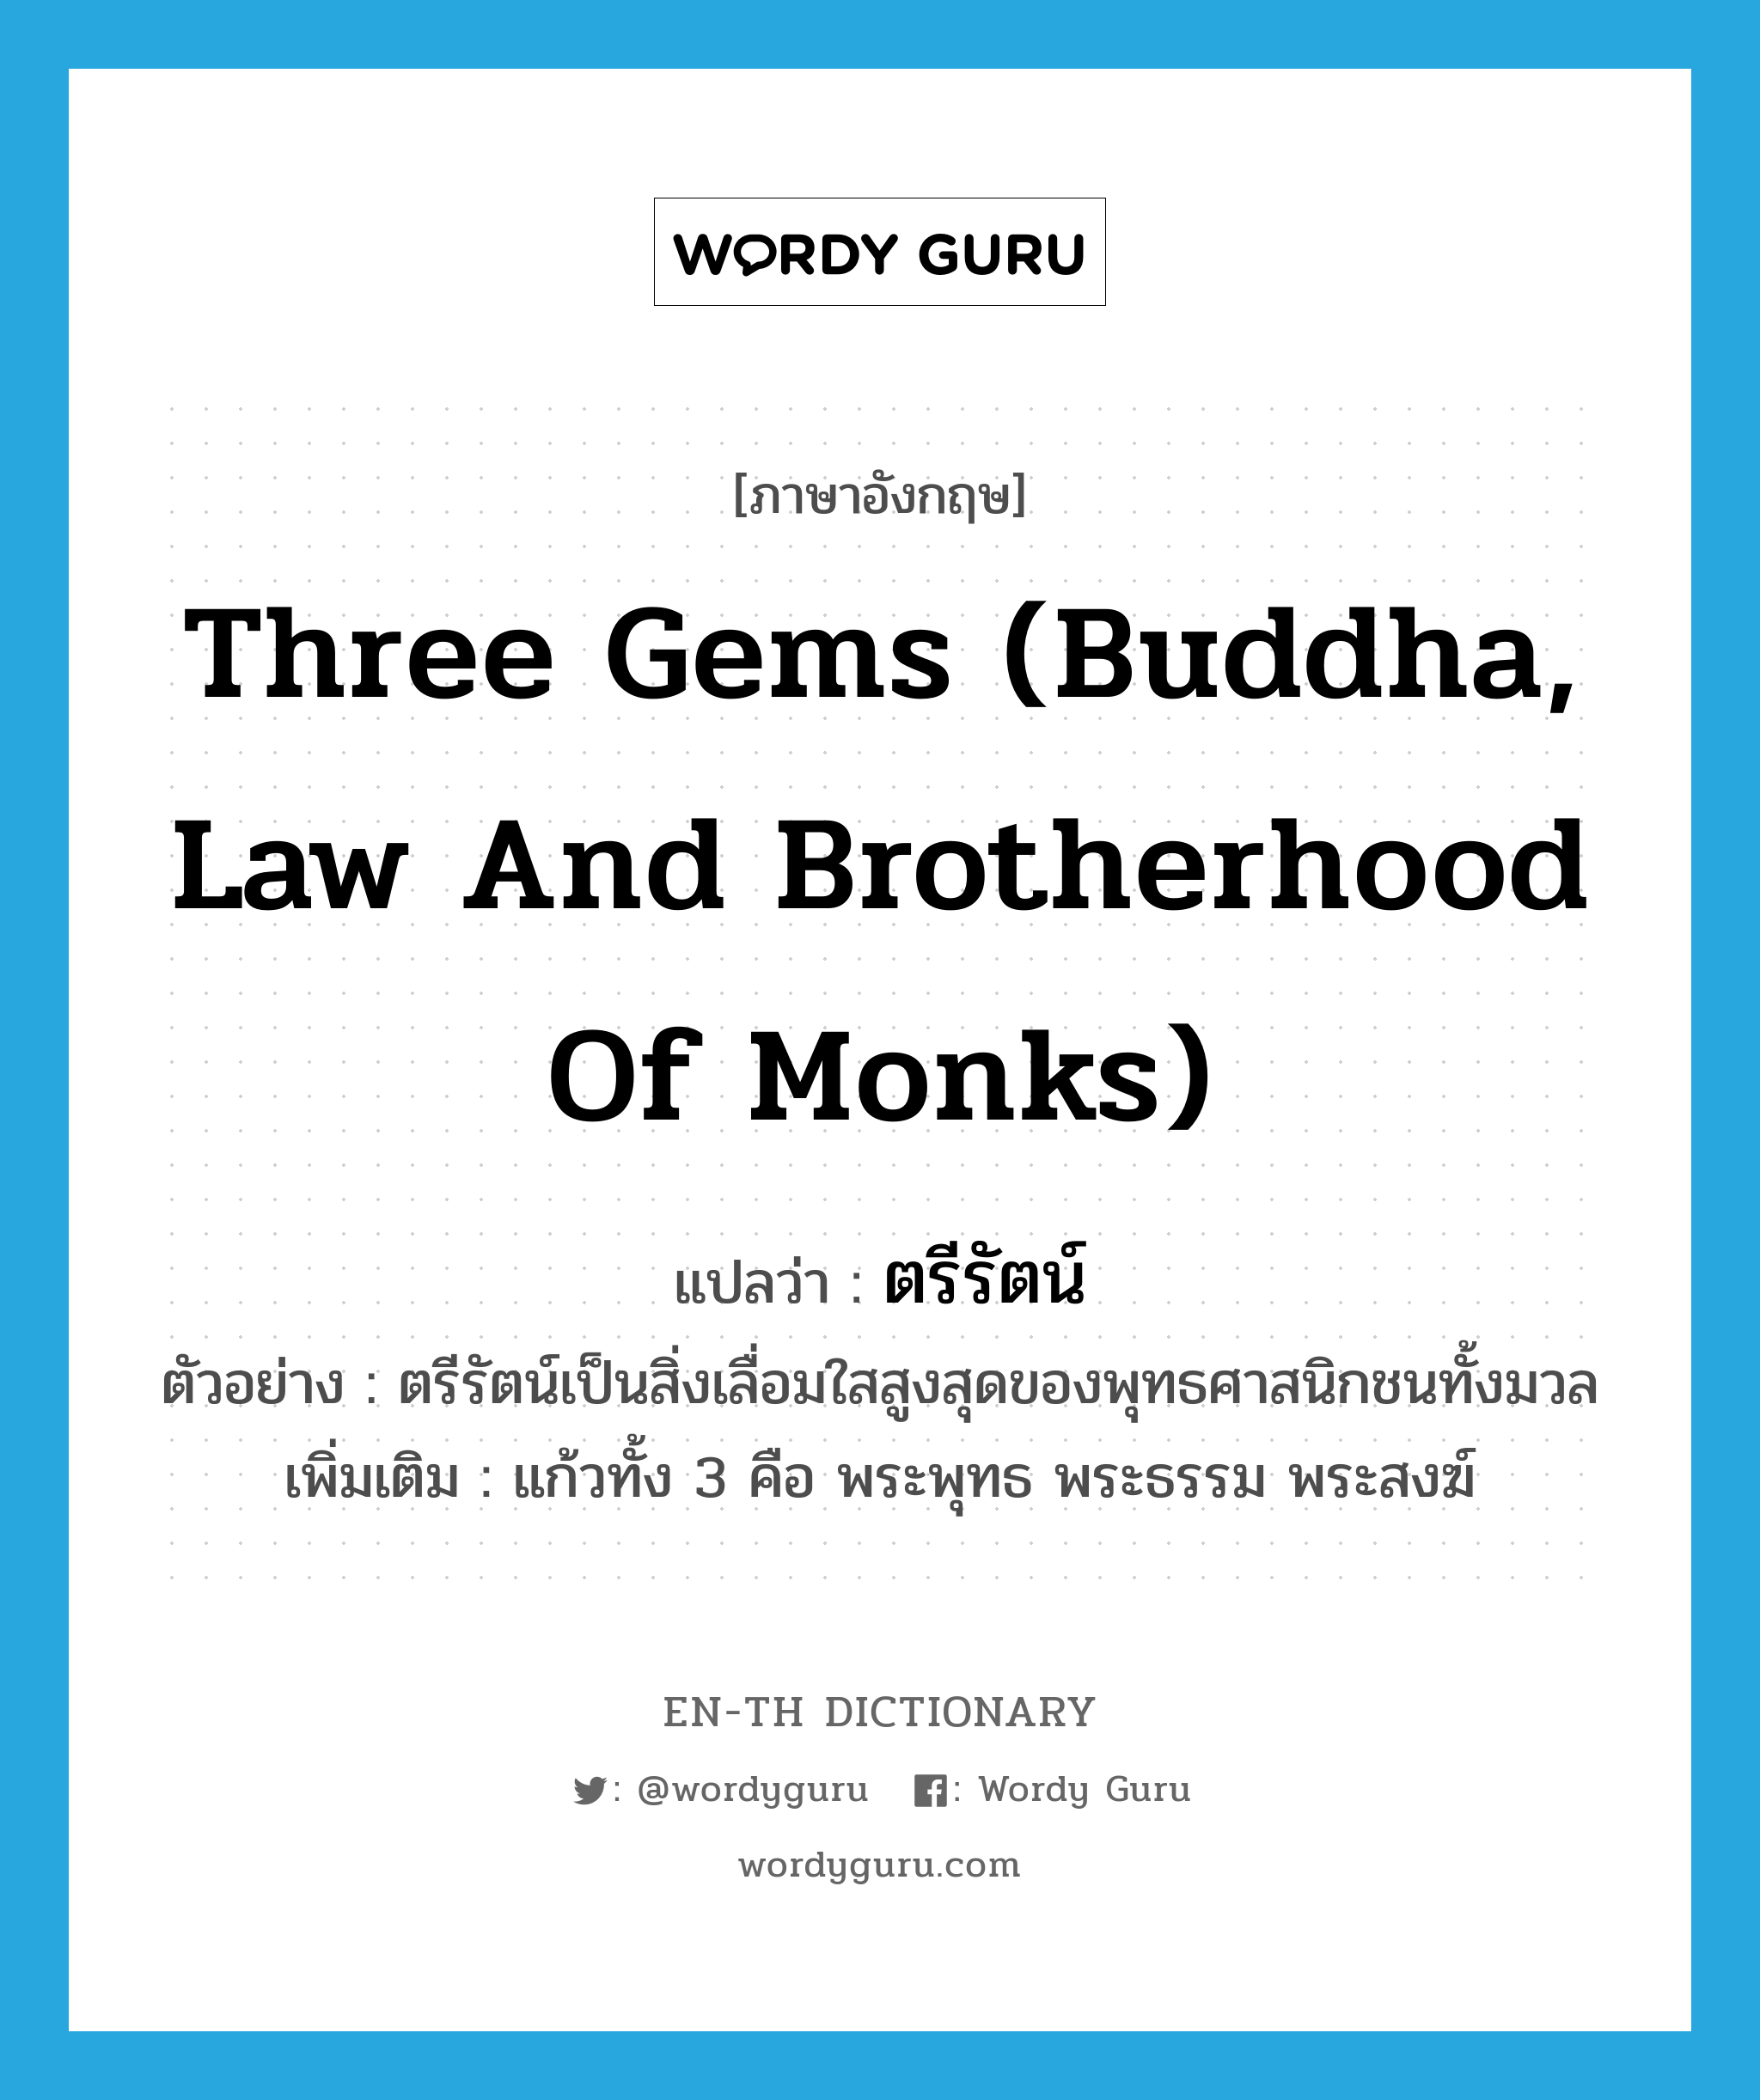 ตรีรัตน์ ภาษาอังกฤษ?, คำศัพท์ภาษาอังกฤษ ตรีรัตน์ แปลว่า three gems (Buddha, law and brotherhood of monks) ประเภท N ตัวอย่าง ตรีรัตน์เป็นสิ่งเลื่อมใสสูงสุดของพุทธศาสนิกชนทั้งมวล เพิ่มเติม แก้วทั้ง 3 คือ พระพุทธ พระธรรม พระสงฆ์ หมวด N